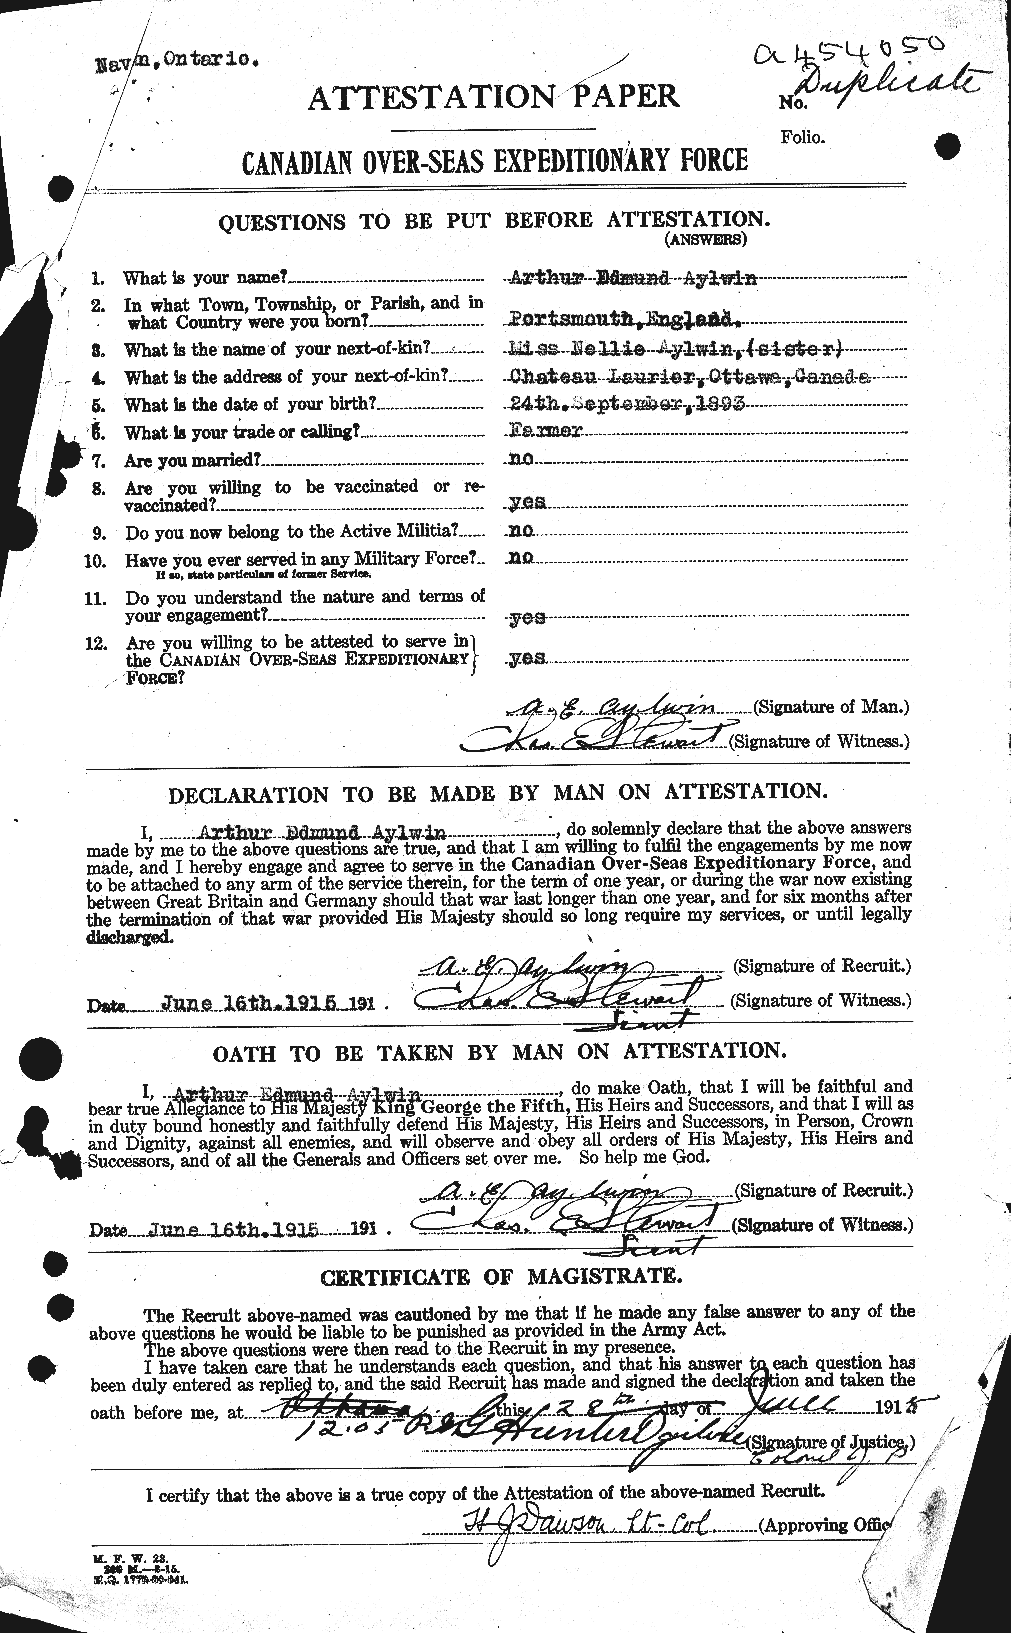 Dossiers du Personnel de la Première Guerre mondiale - CEC 215727a